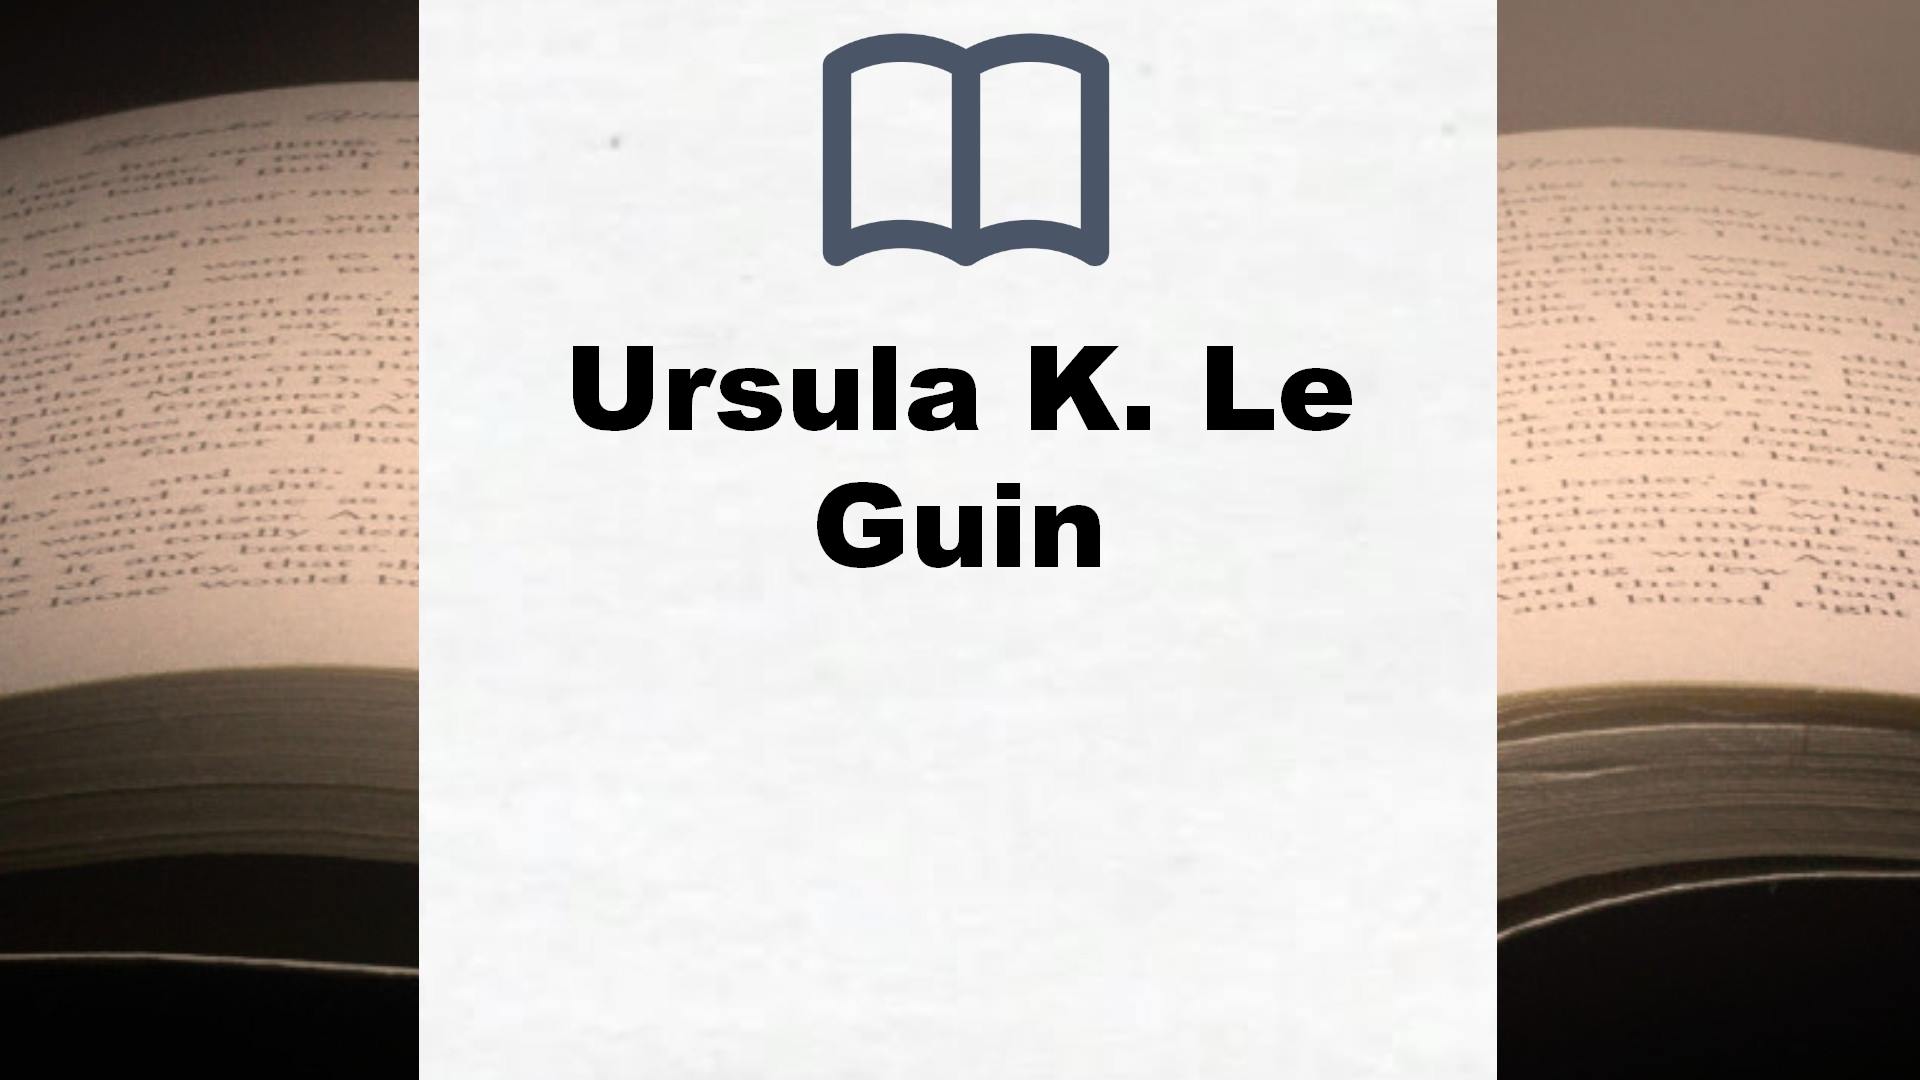 Libros Ursula K. Le Guin